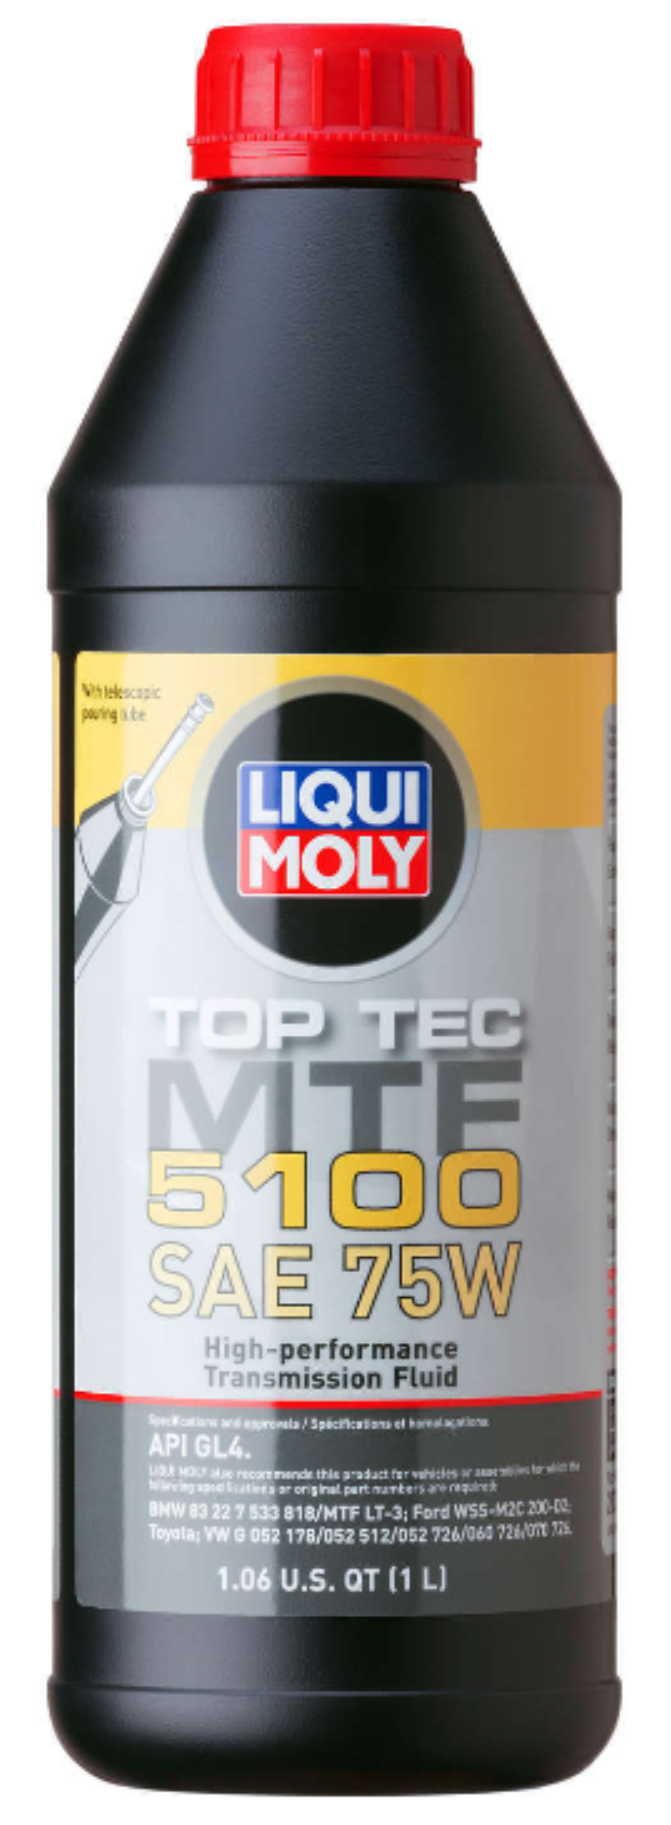 75W Top Tec 5100 MTF (1 Liter) - Liqui Moly LM20352